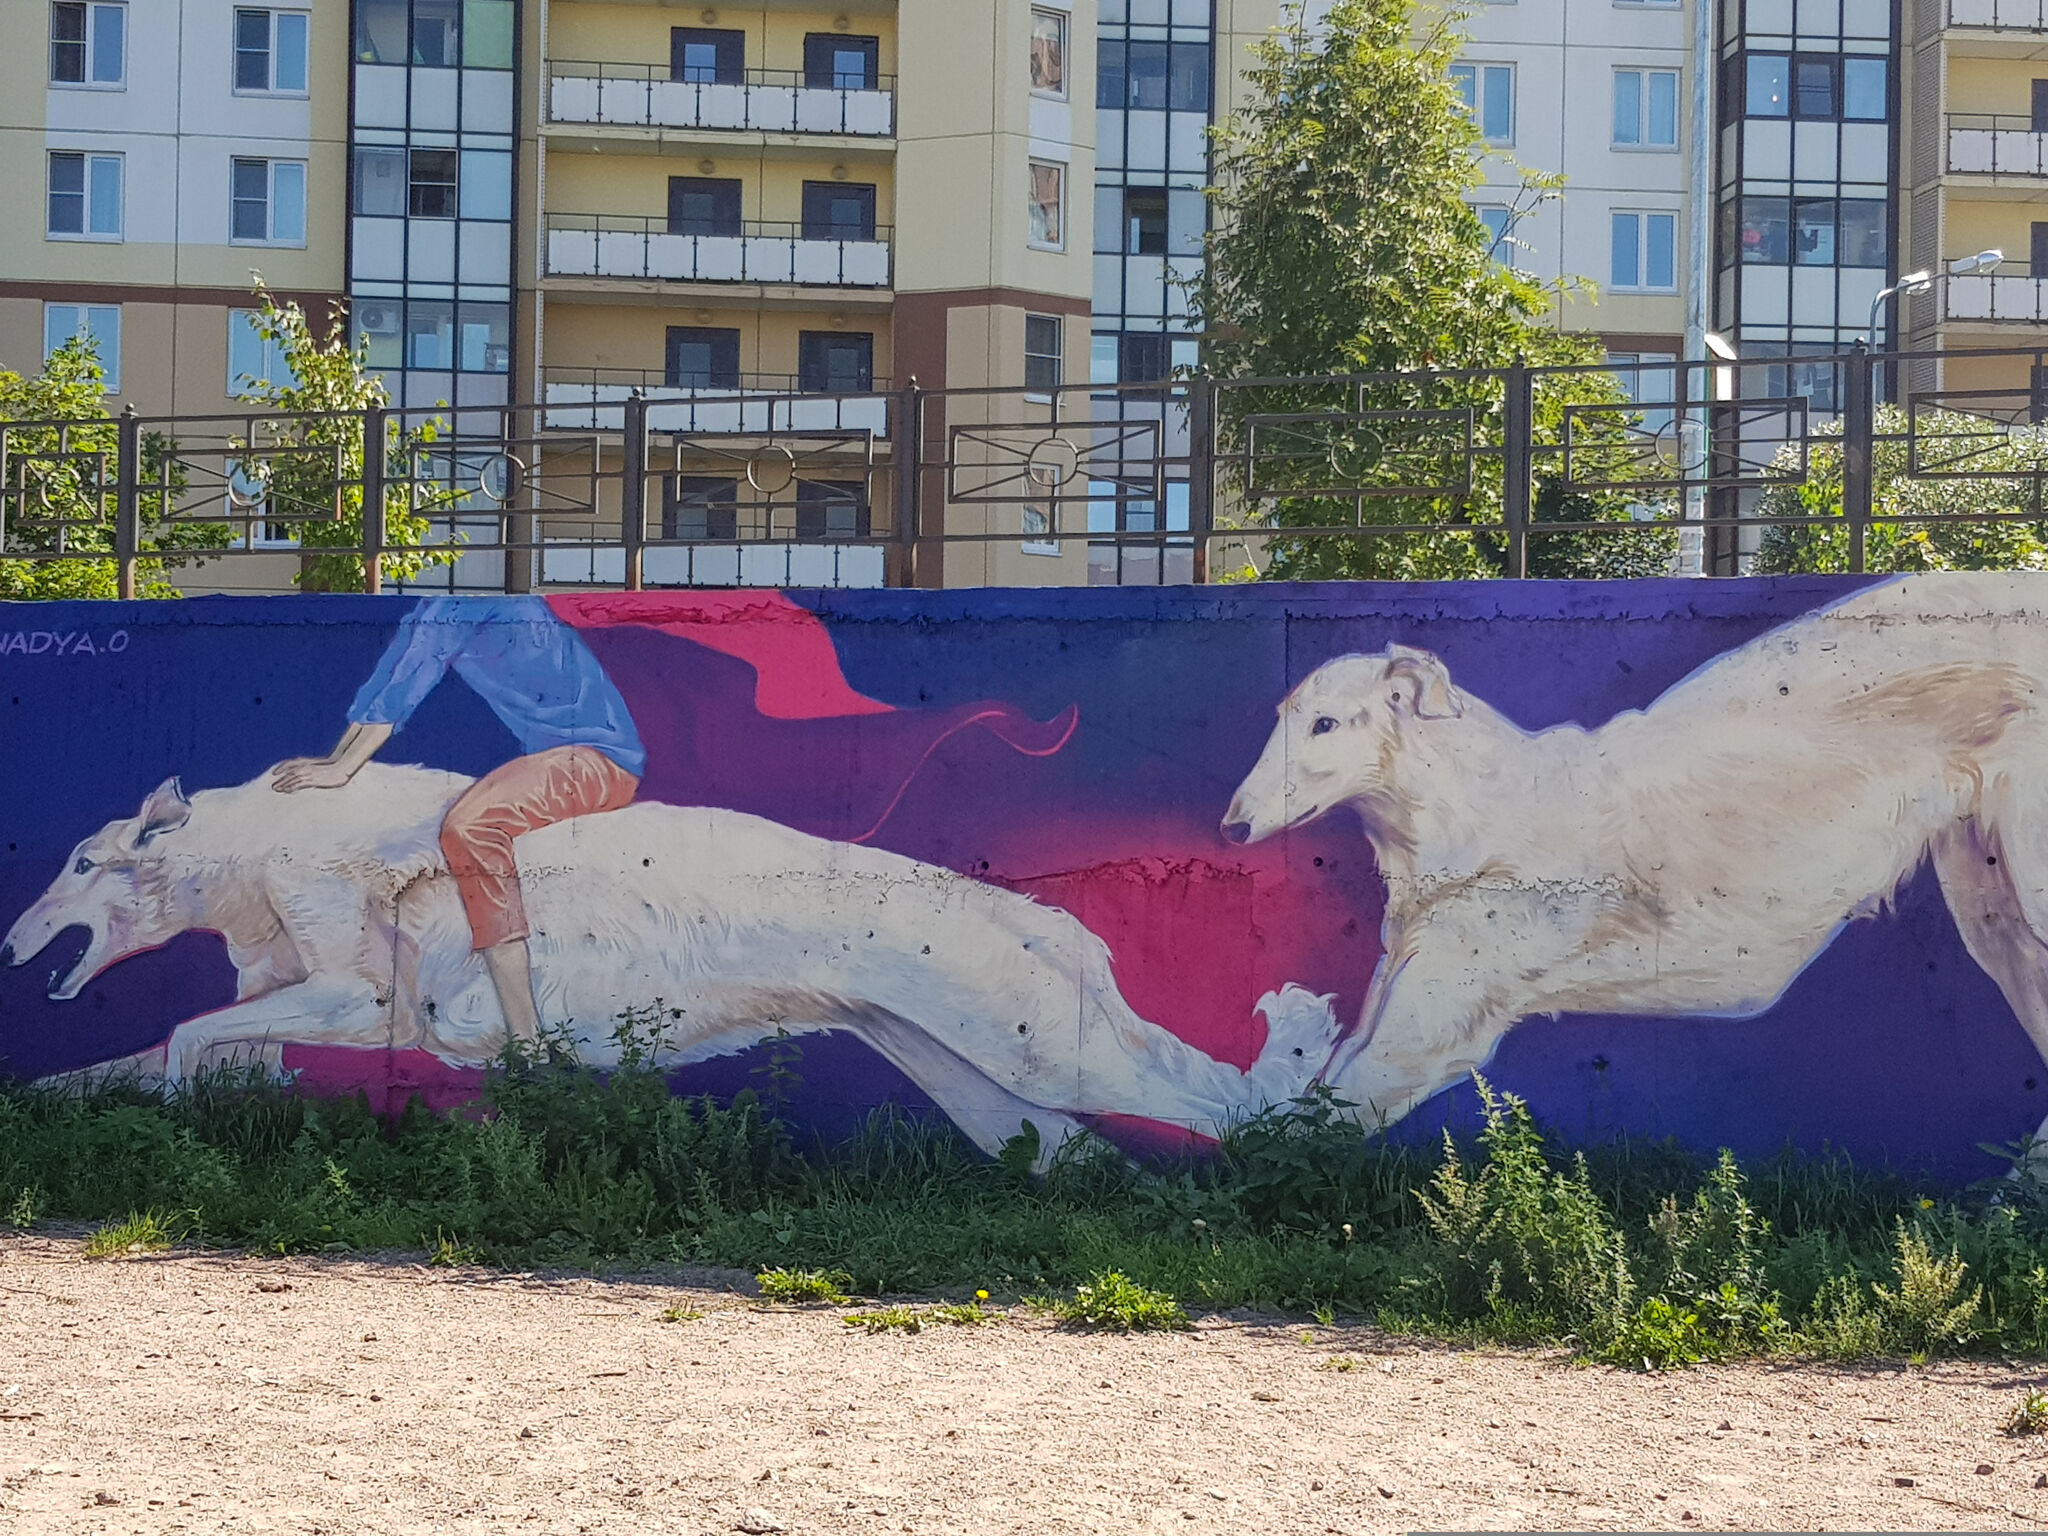 Nadezhda Opalinskaya, 7aur&mdash;Dog playground